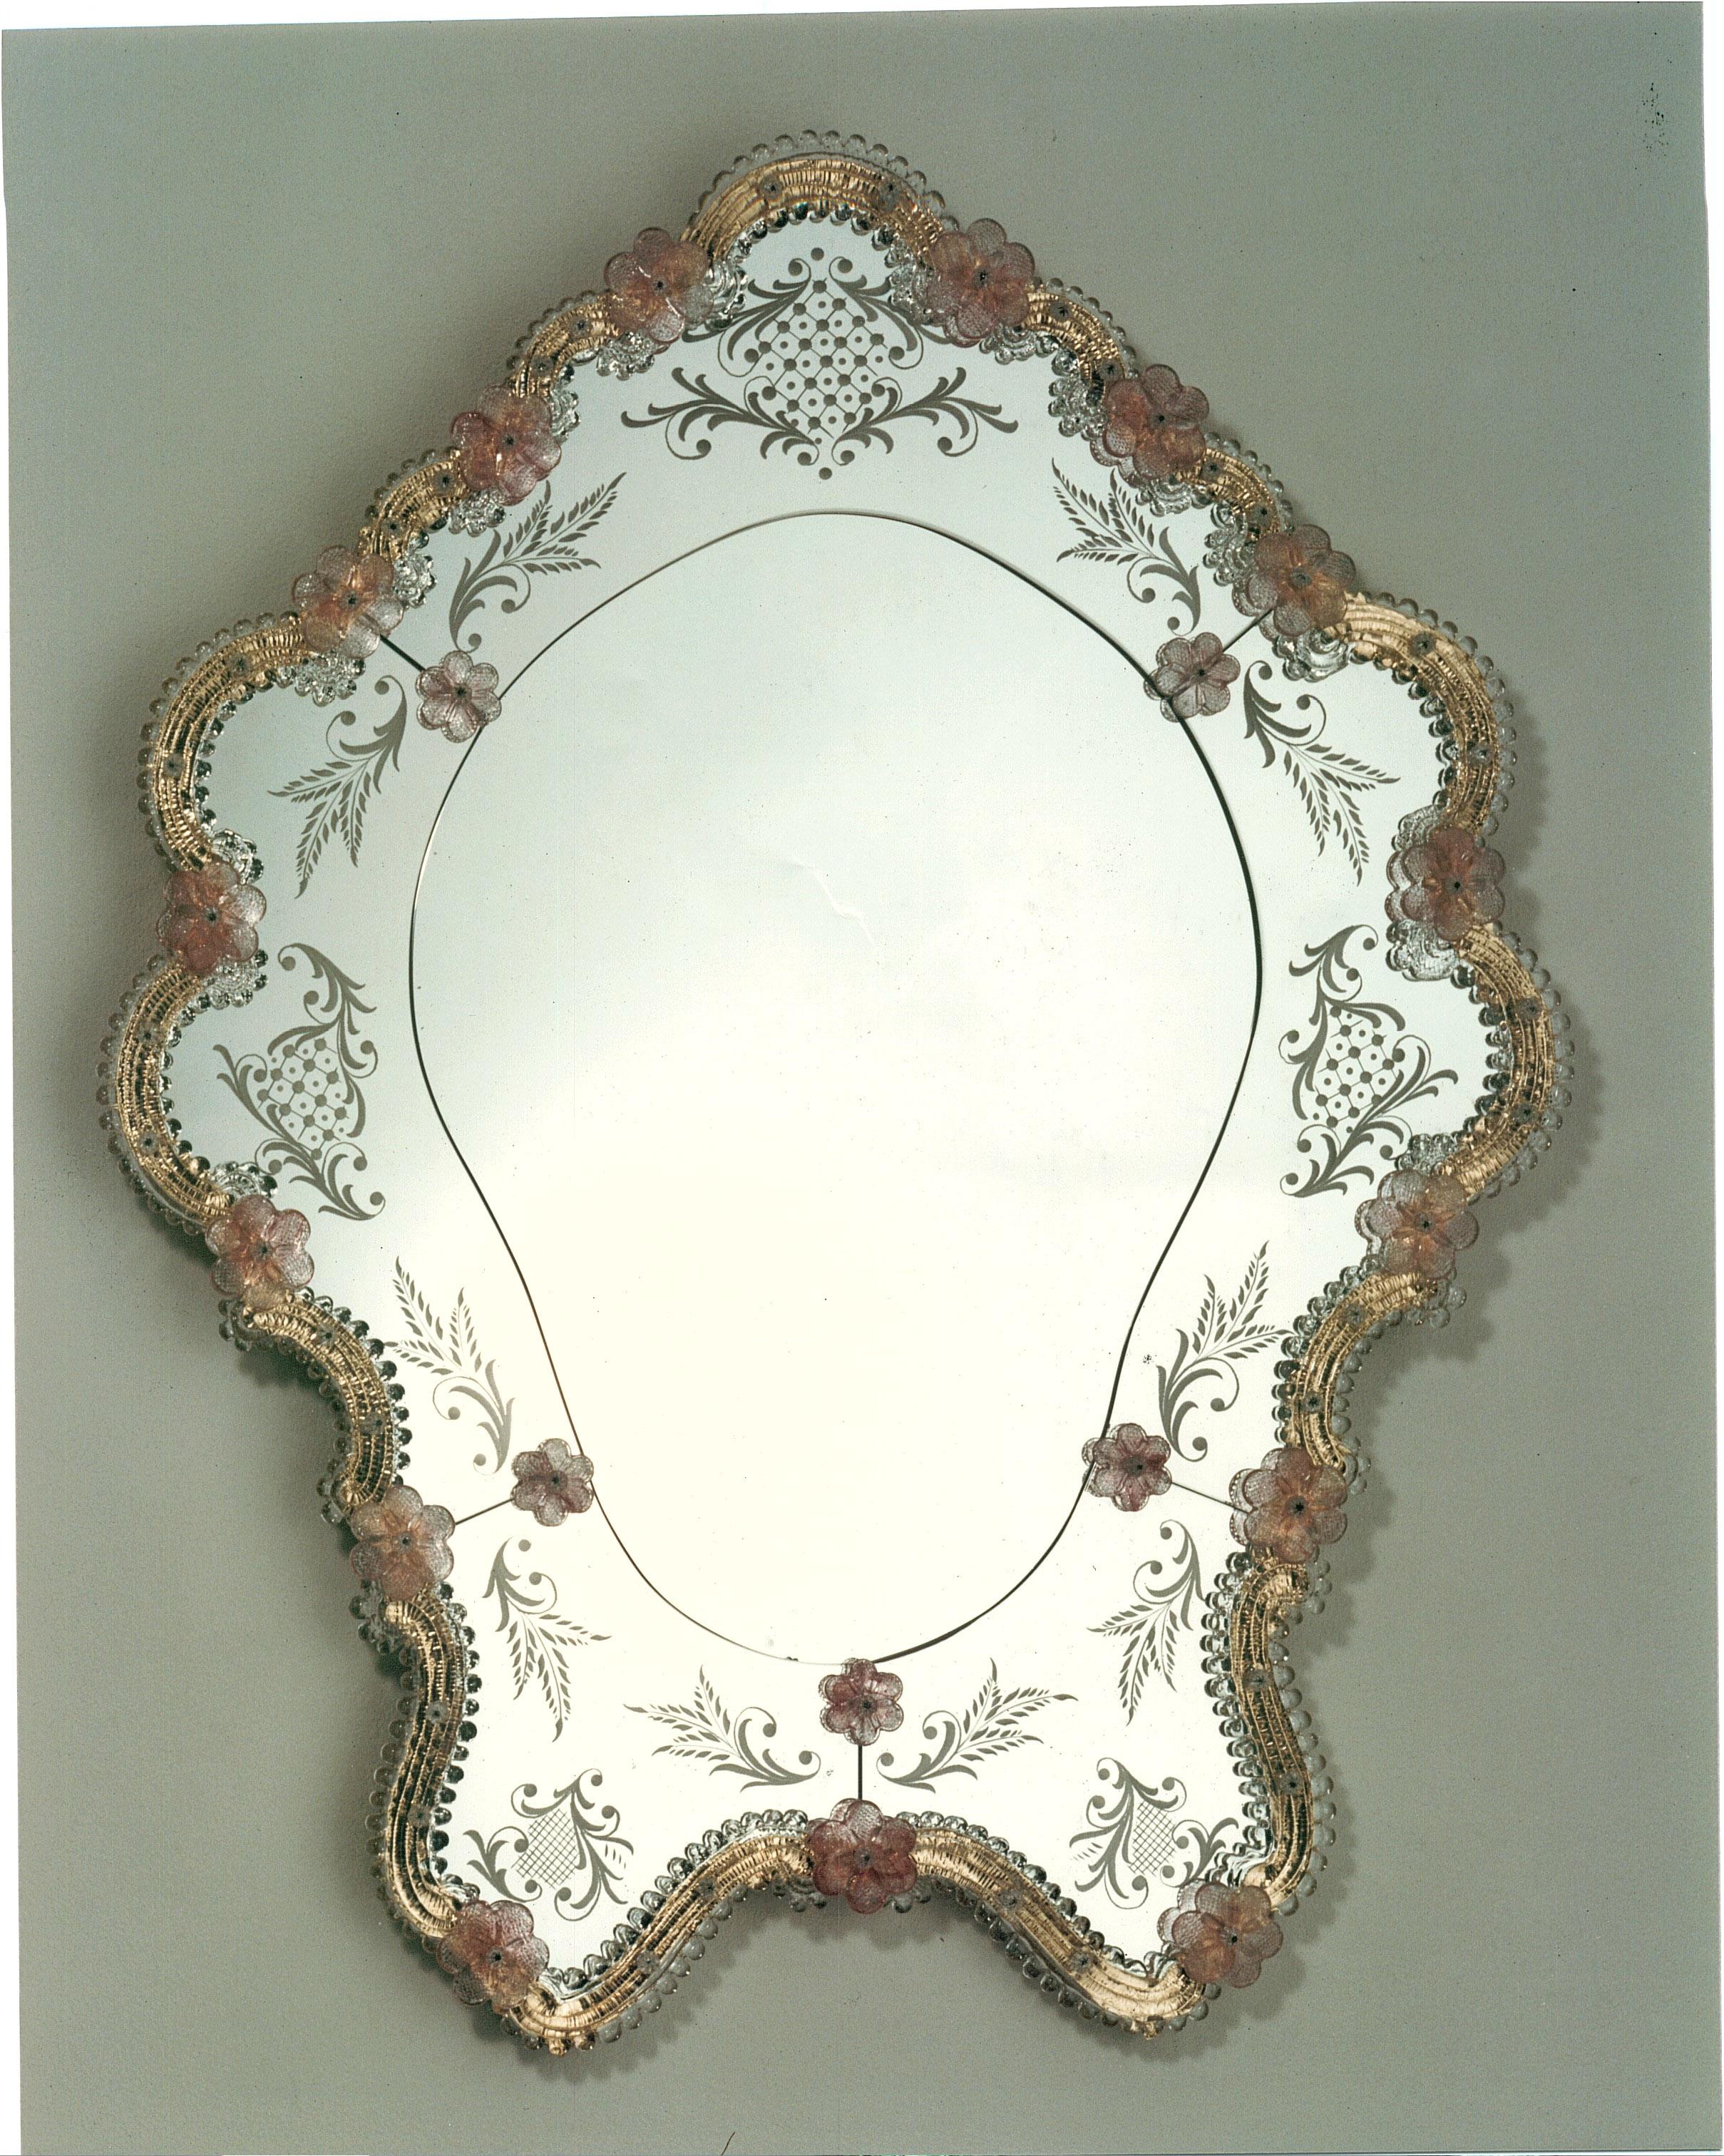 Murano-Glasspiegel im venezianischen Stil, Spiegel nach einem Entwurf von Fratelli Tosi, vollständig handgefertigt nach den Techniken unserer Vorfahren. Spiegel bestehend aus einem Rahmen aus Kristall und Rubin aus Murano-Glas und verziert mit